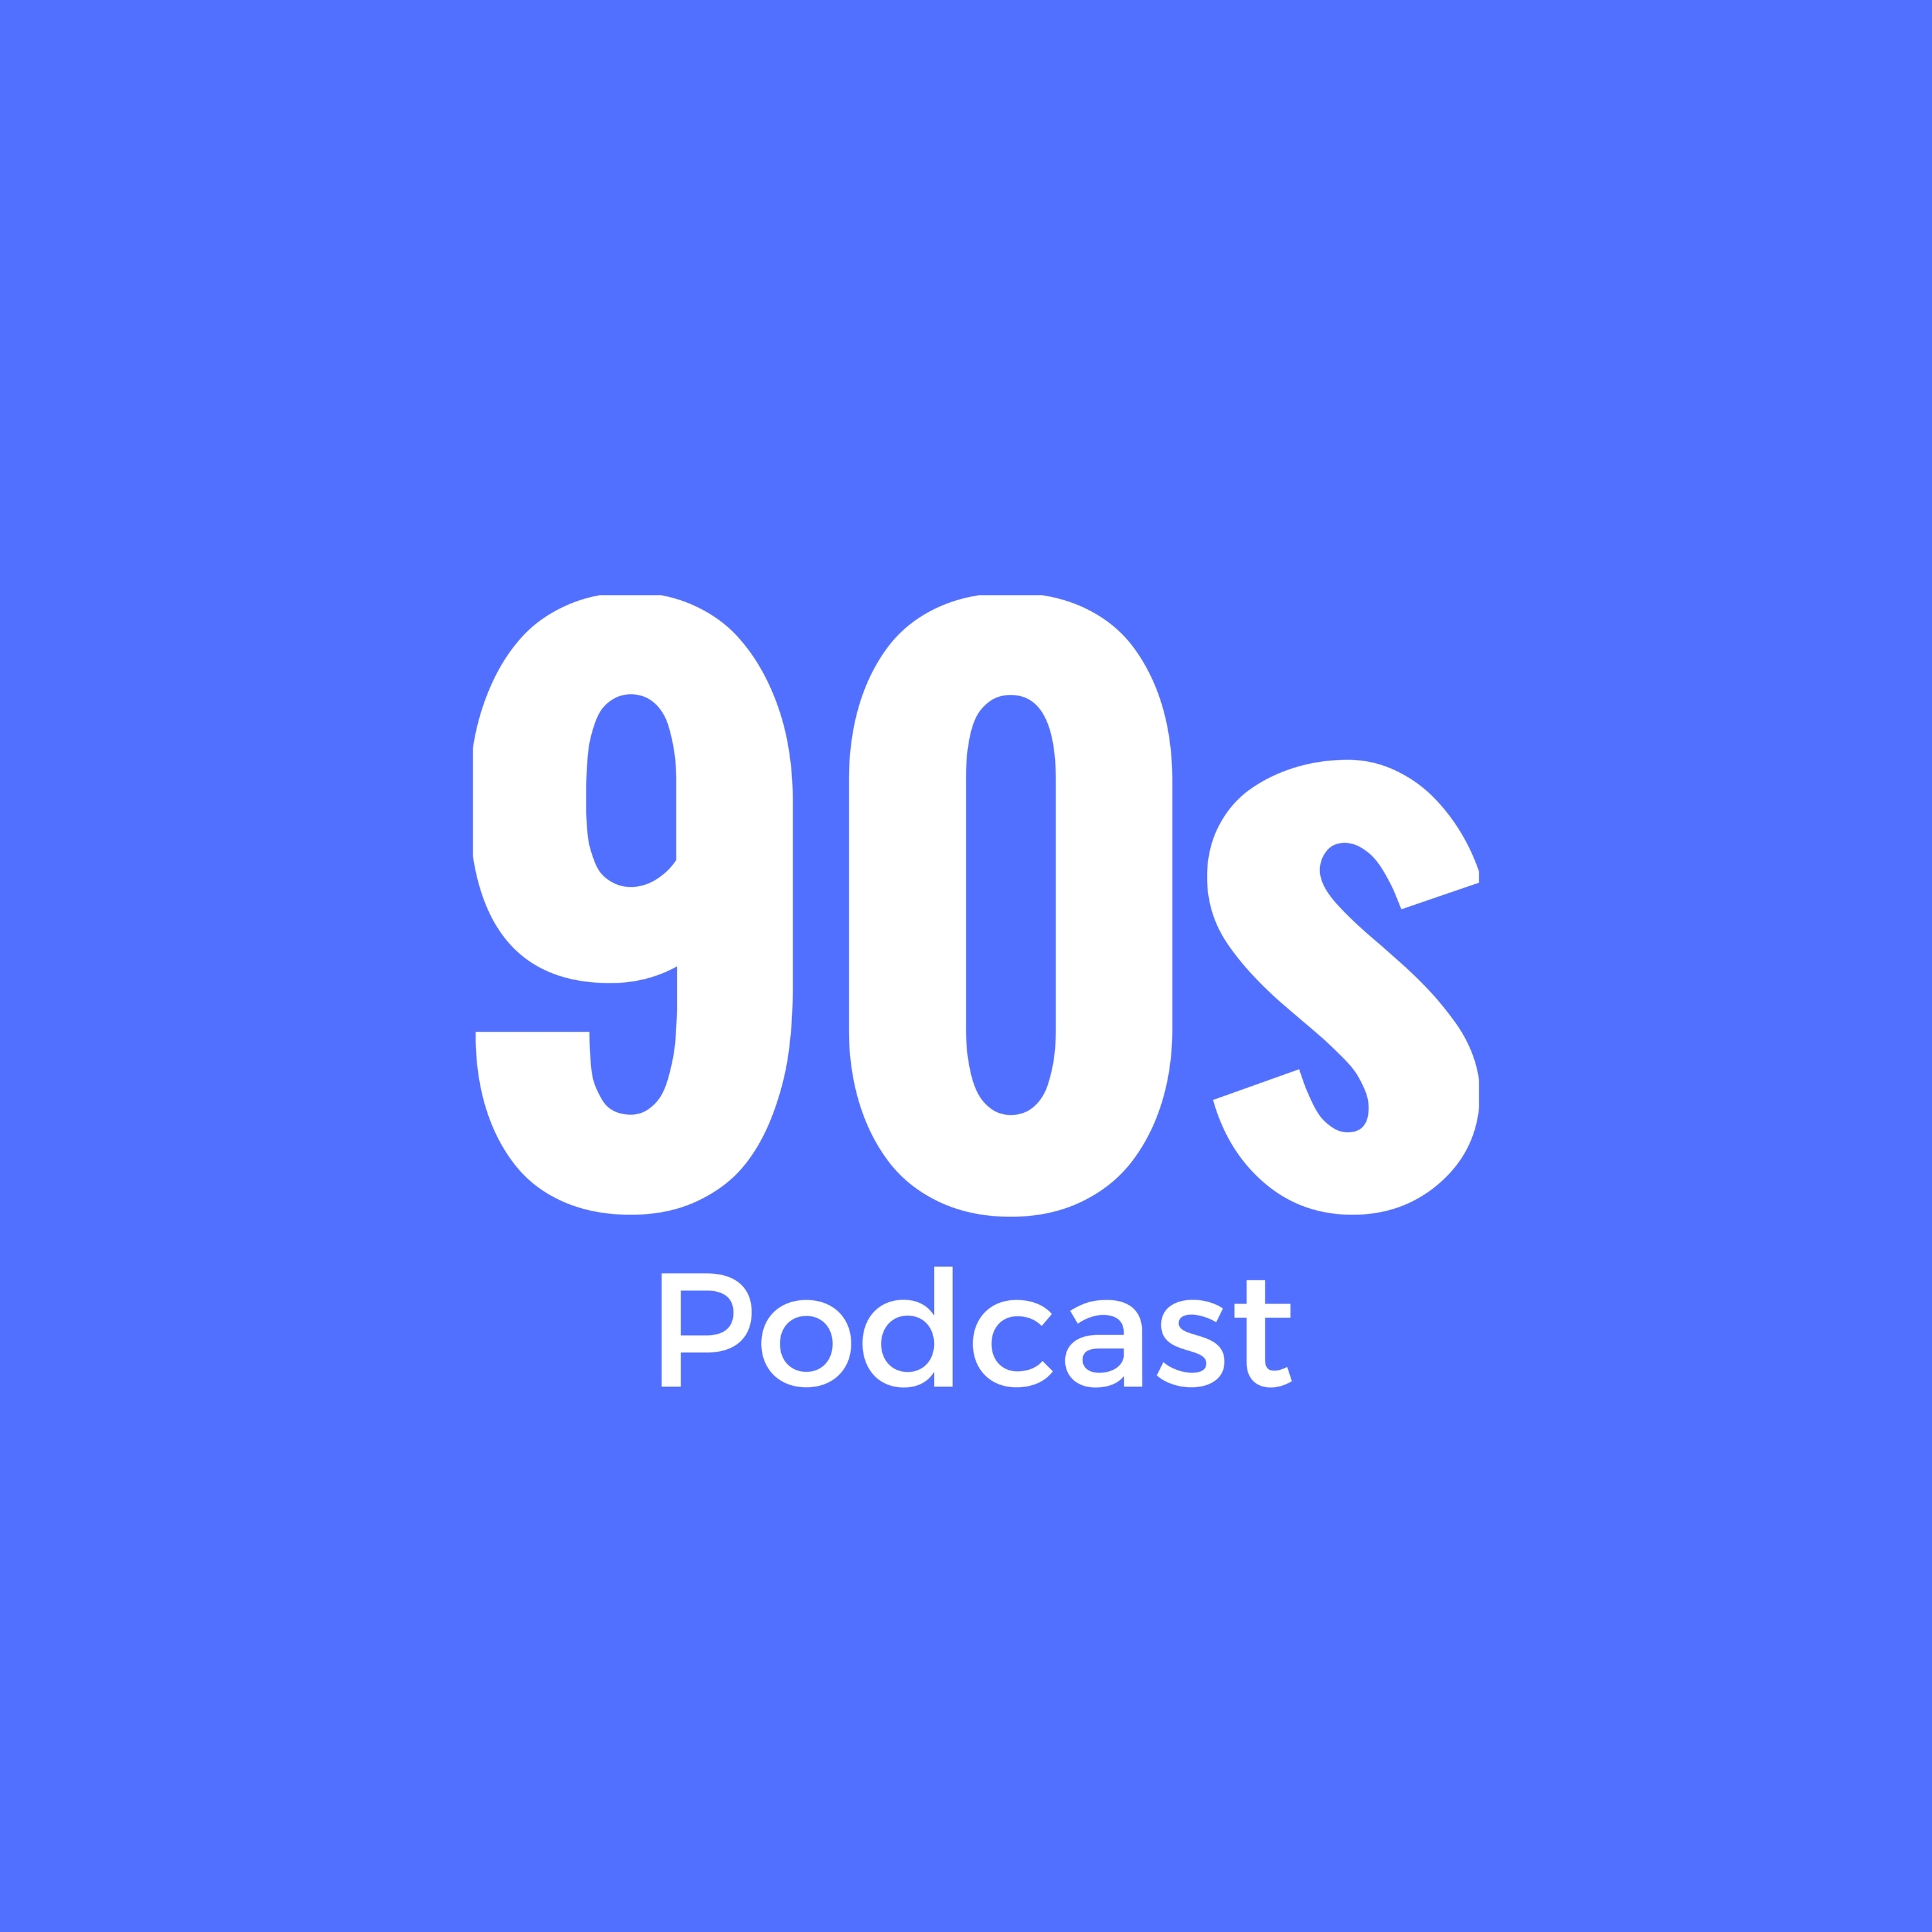 Episode 14 - Werbespots der 90er Jahre #02